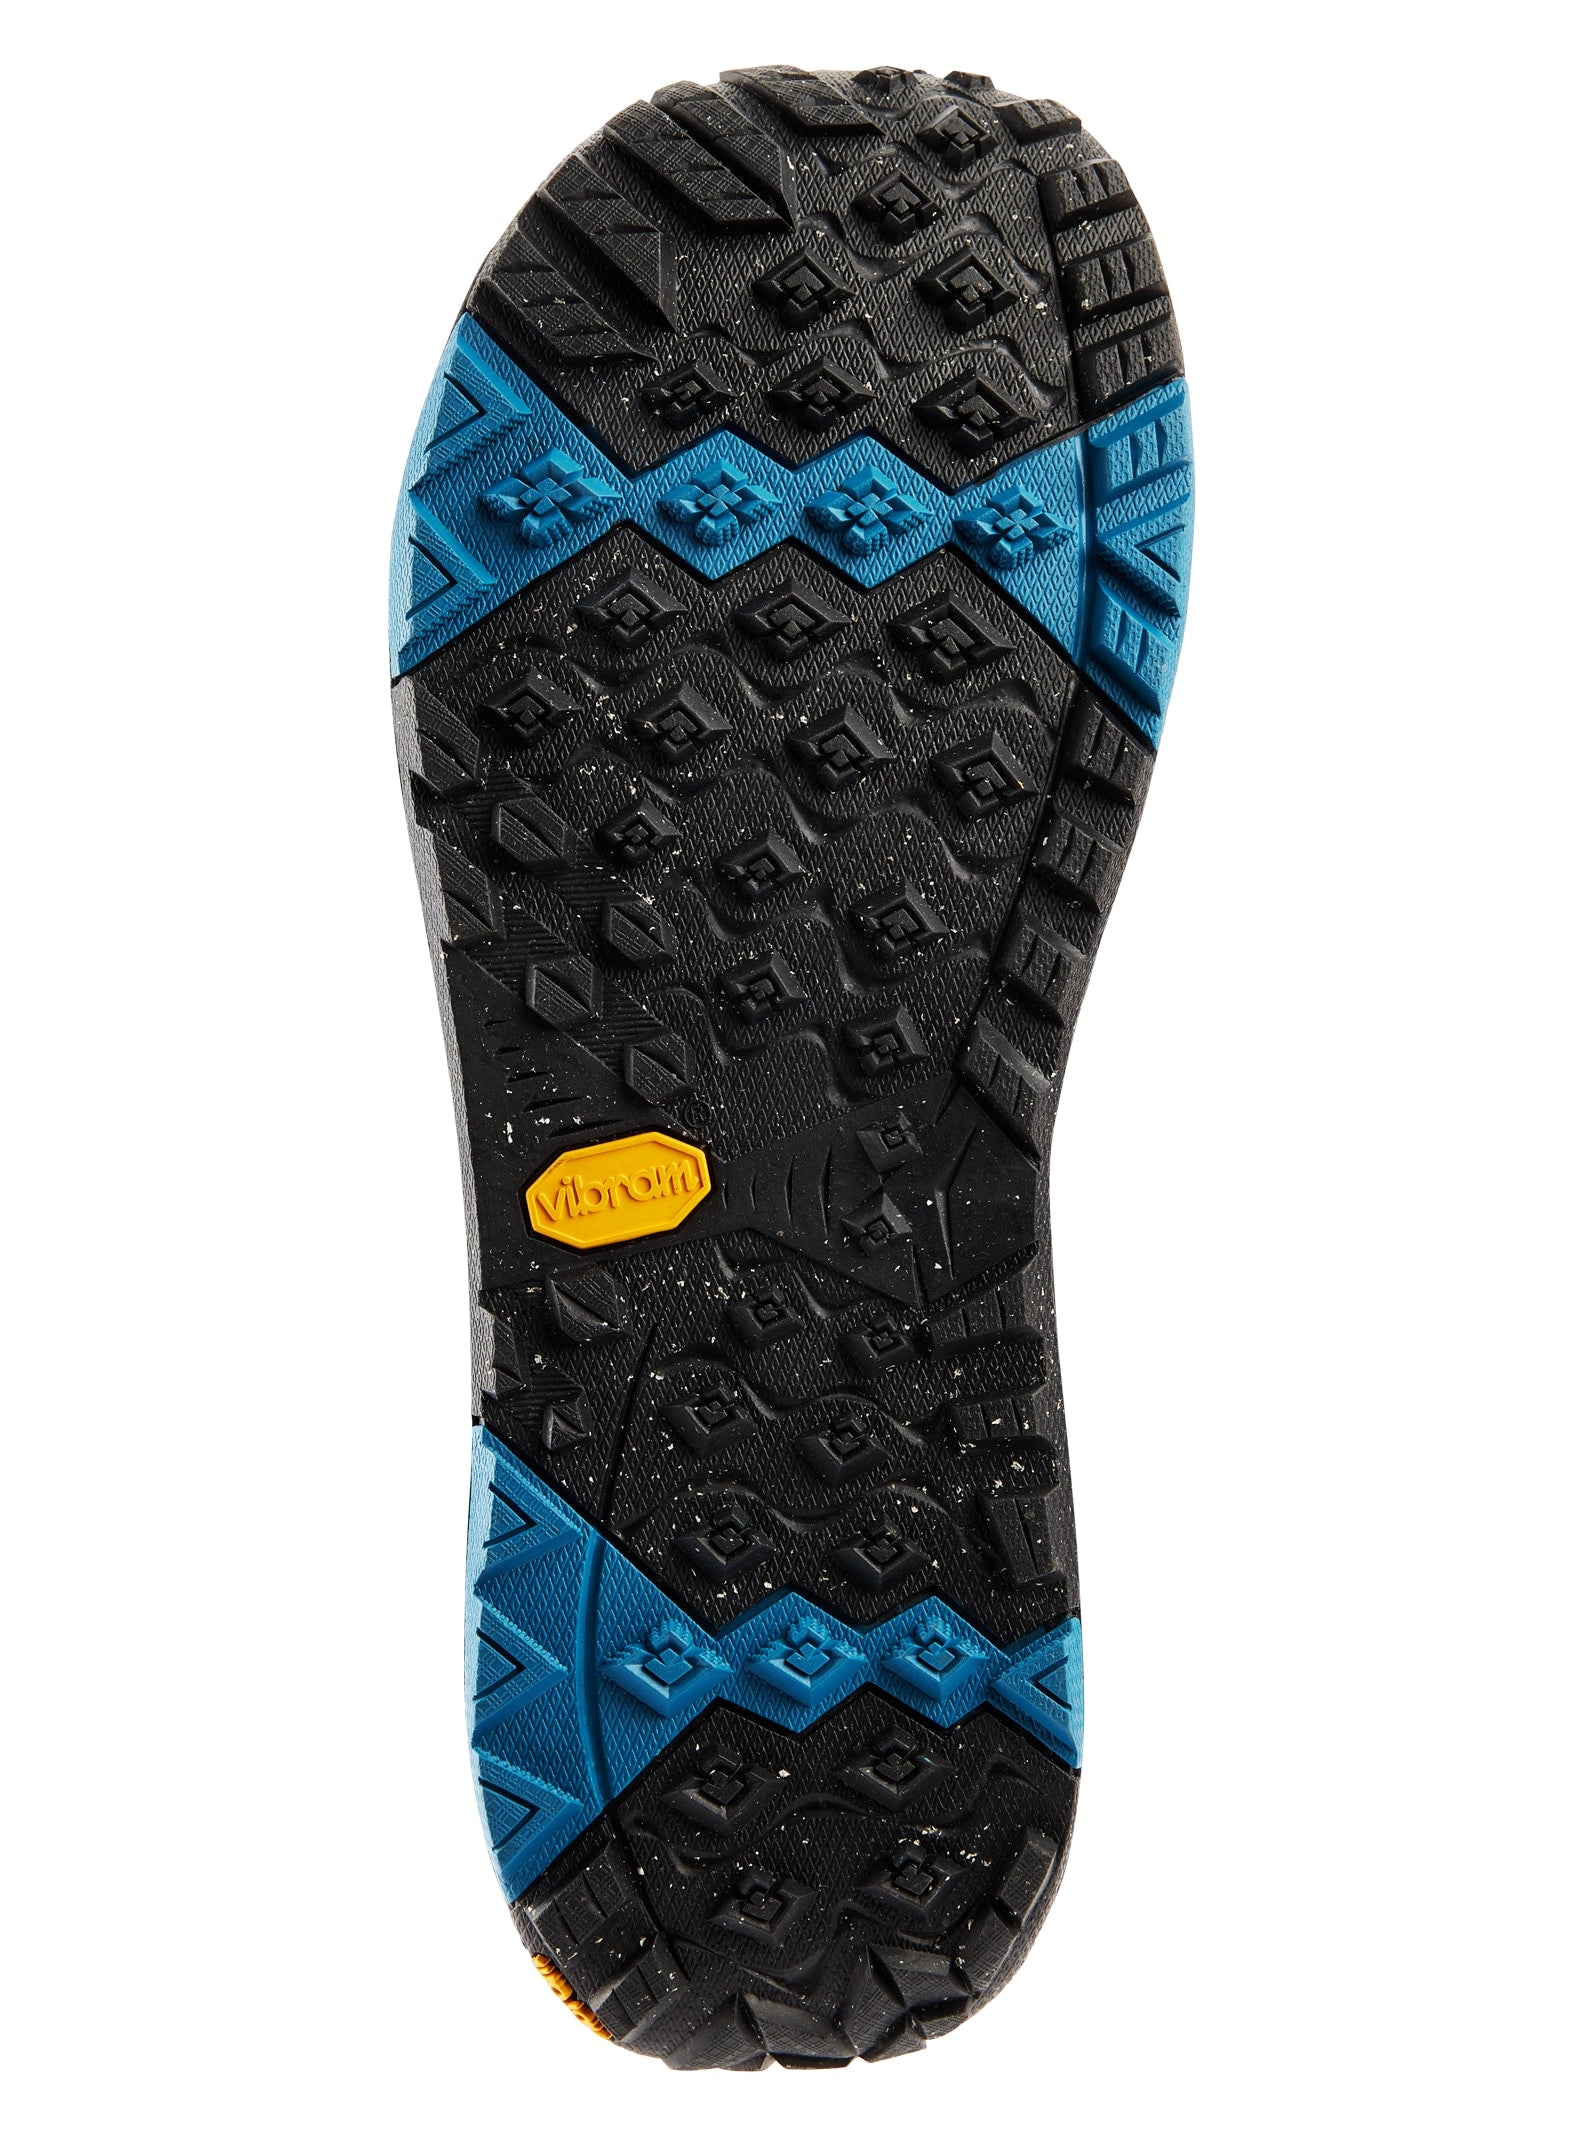 Men's Photon BOA® Snowboard Boots - Wide, Black